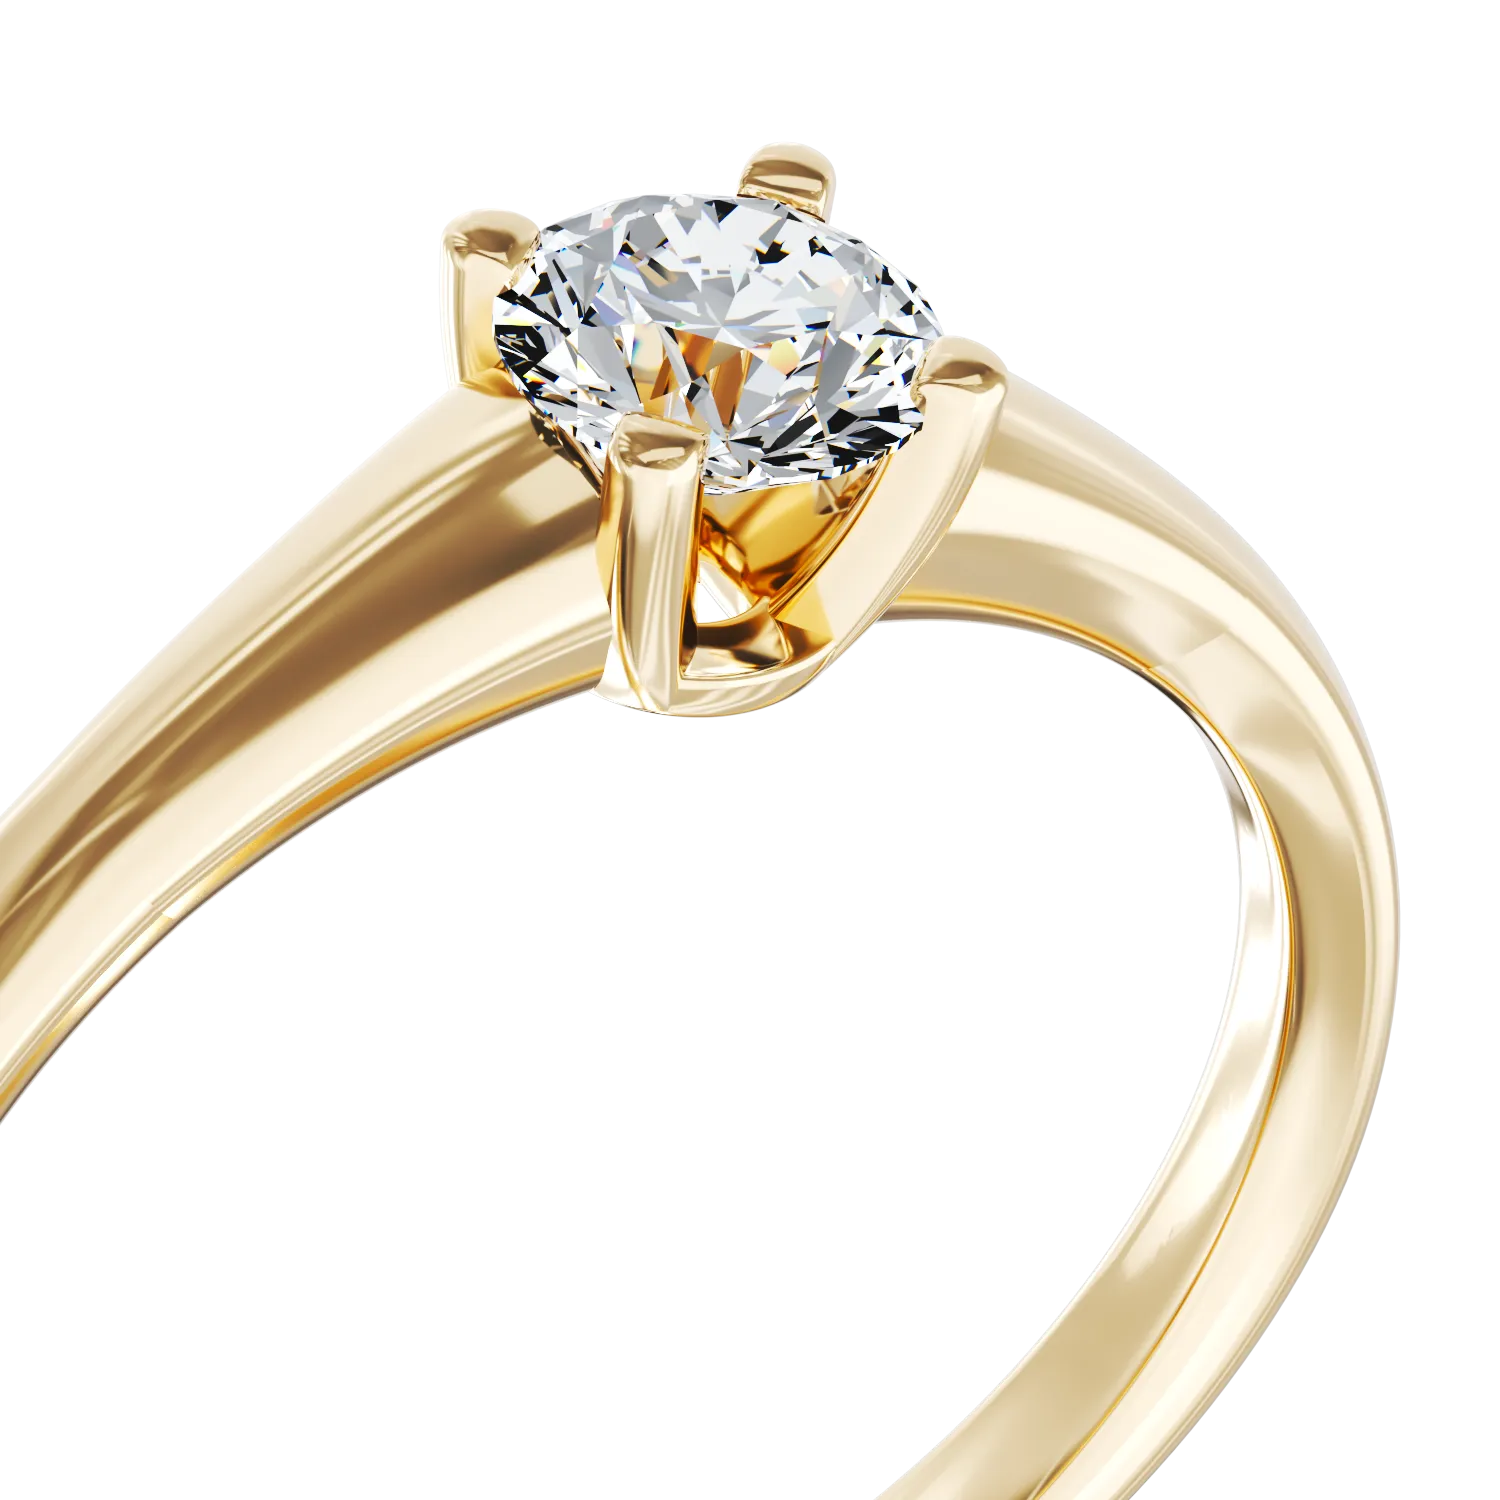 Eljegyzési gyűrű 18K-os sárga aranyból 0,3ct gyémánttal. Gramm: 2,93